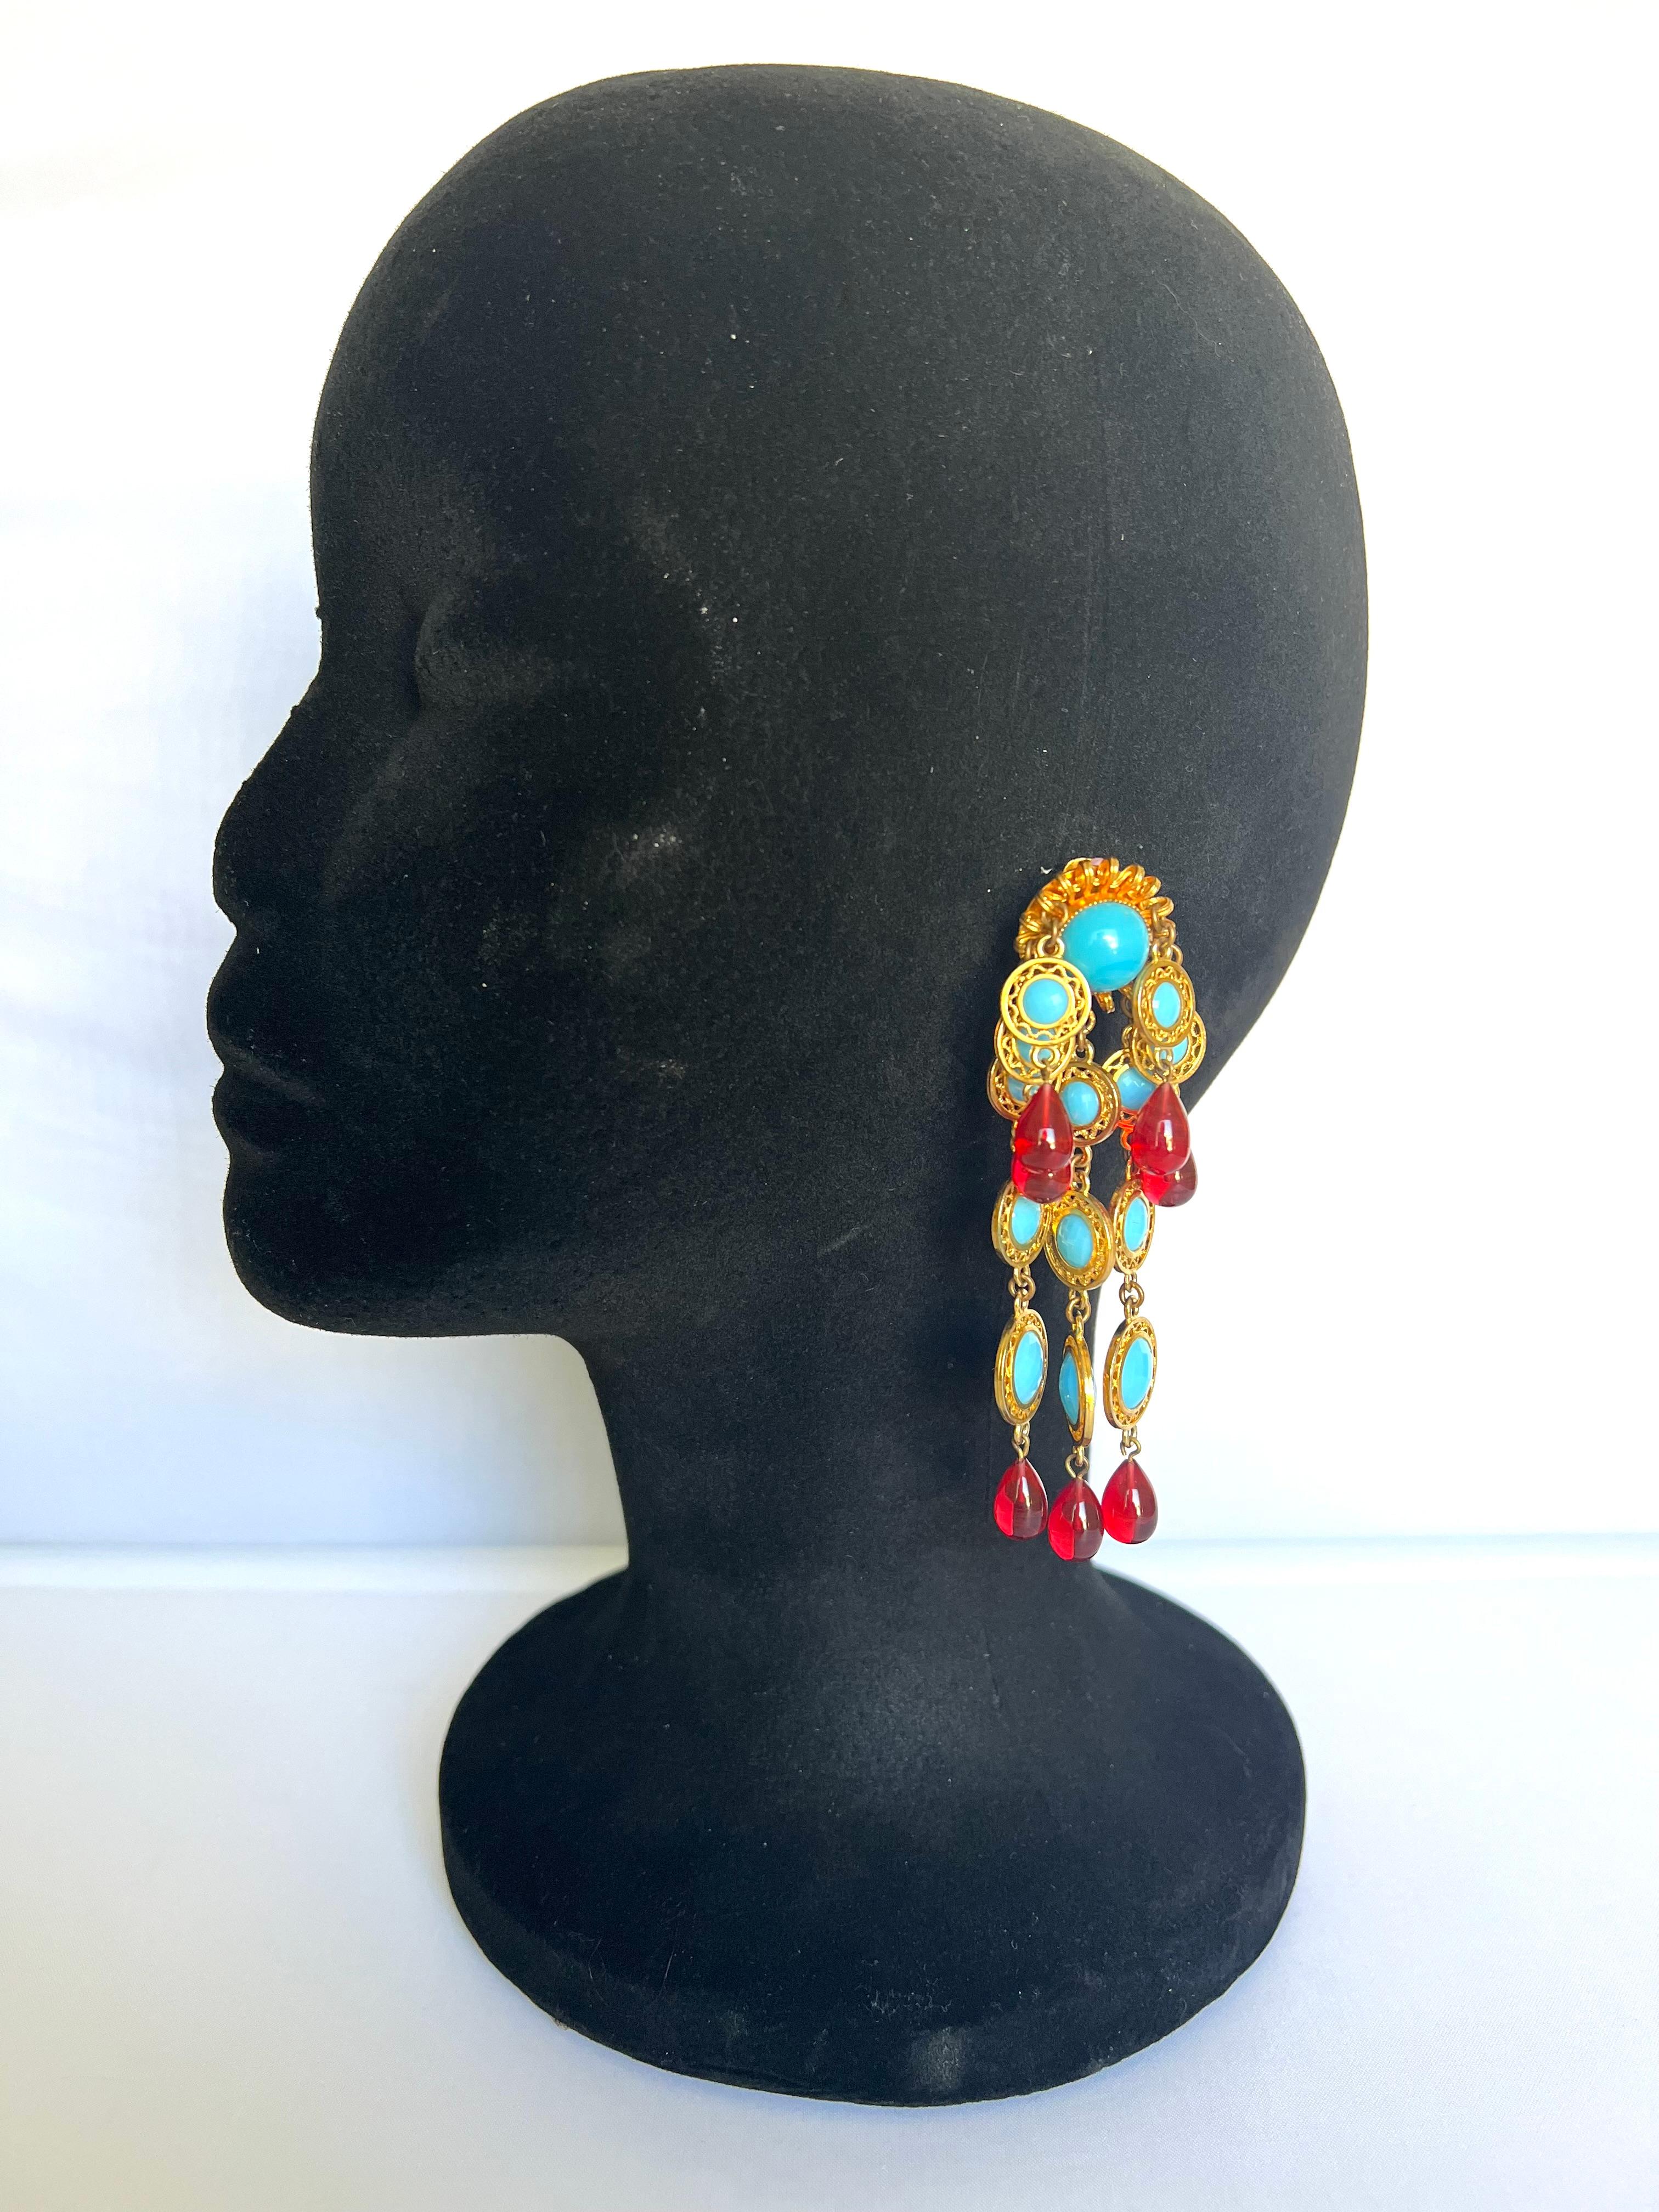 Vintage vergoldete Metall Ohrringe von William de Lillo, LTD ca. 1970's. Die Kronleuchter-Ohrringe bestehen aus Metallsträngen, die mit roten und türkisfarbenen Glascabochons verziert sind. Die Ohrringe werden mit ihrer Originalkarte geliefert.